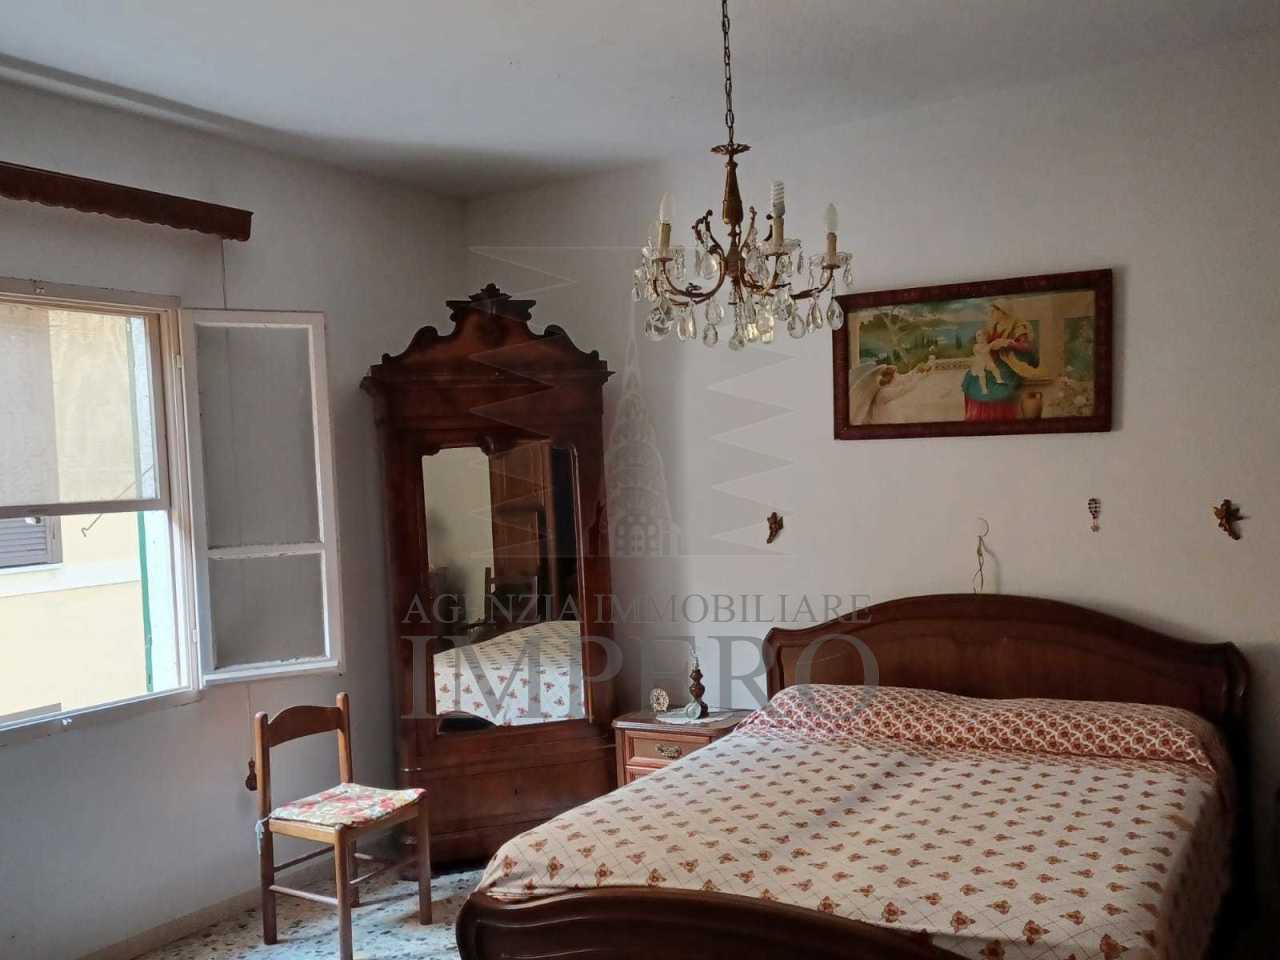 Appartamento in vendita a Ventimiglia, 3 locali, prezzo € 58.000 | PortaleAgenzieImmobiliari.it